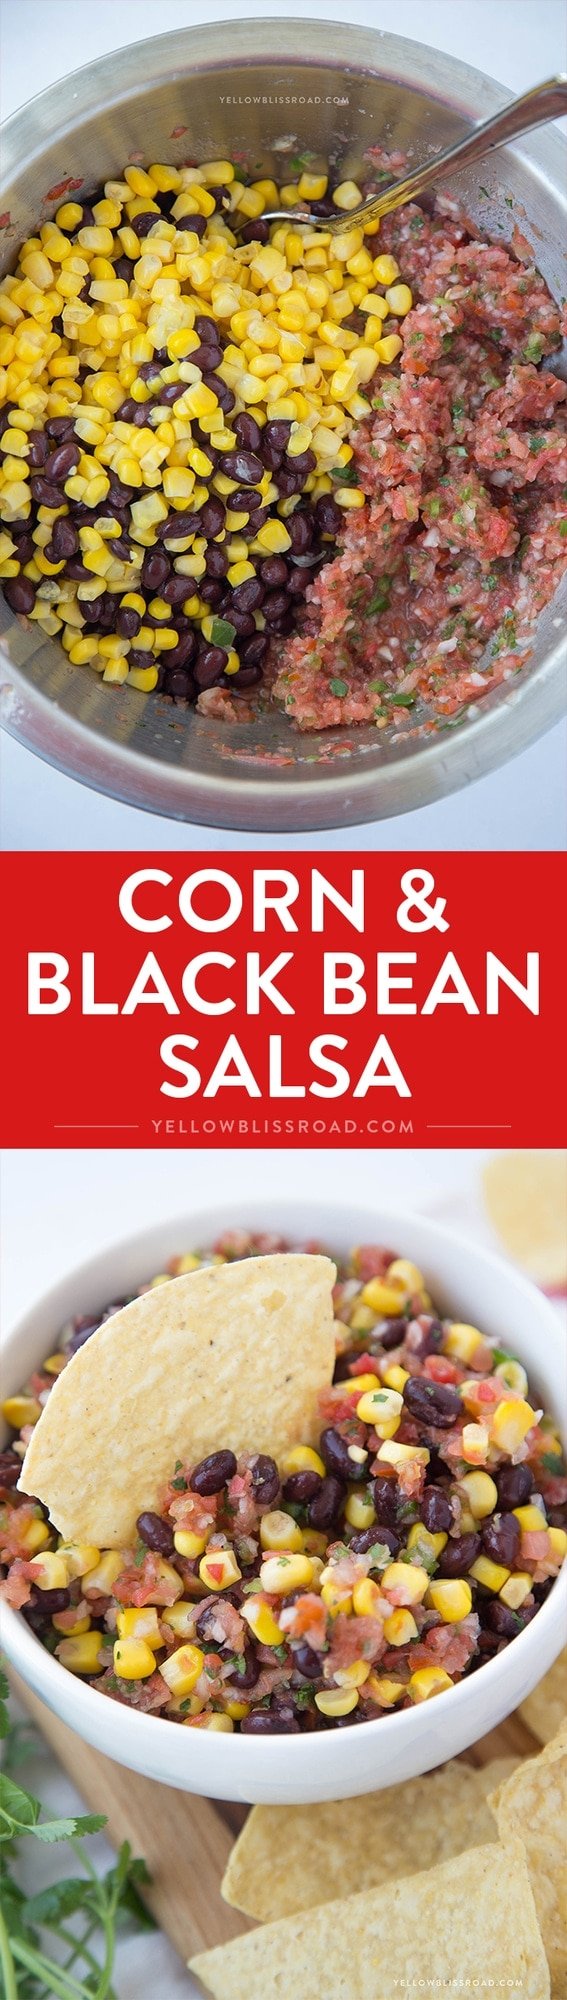 Corn & Black Bean Salsa - easy, fresh salsa with corn and black beans